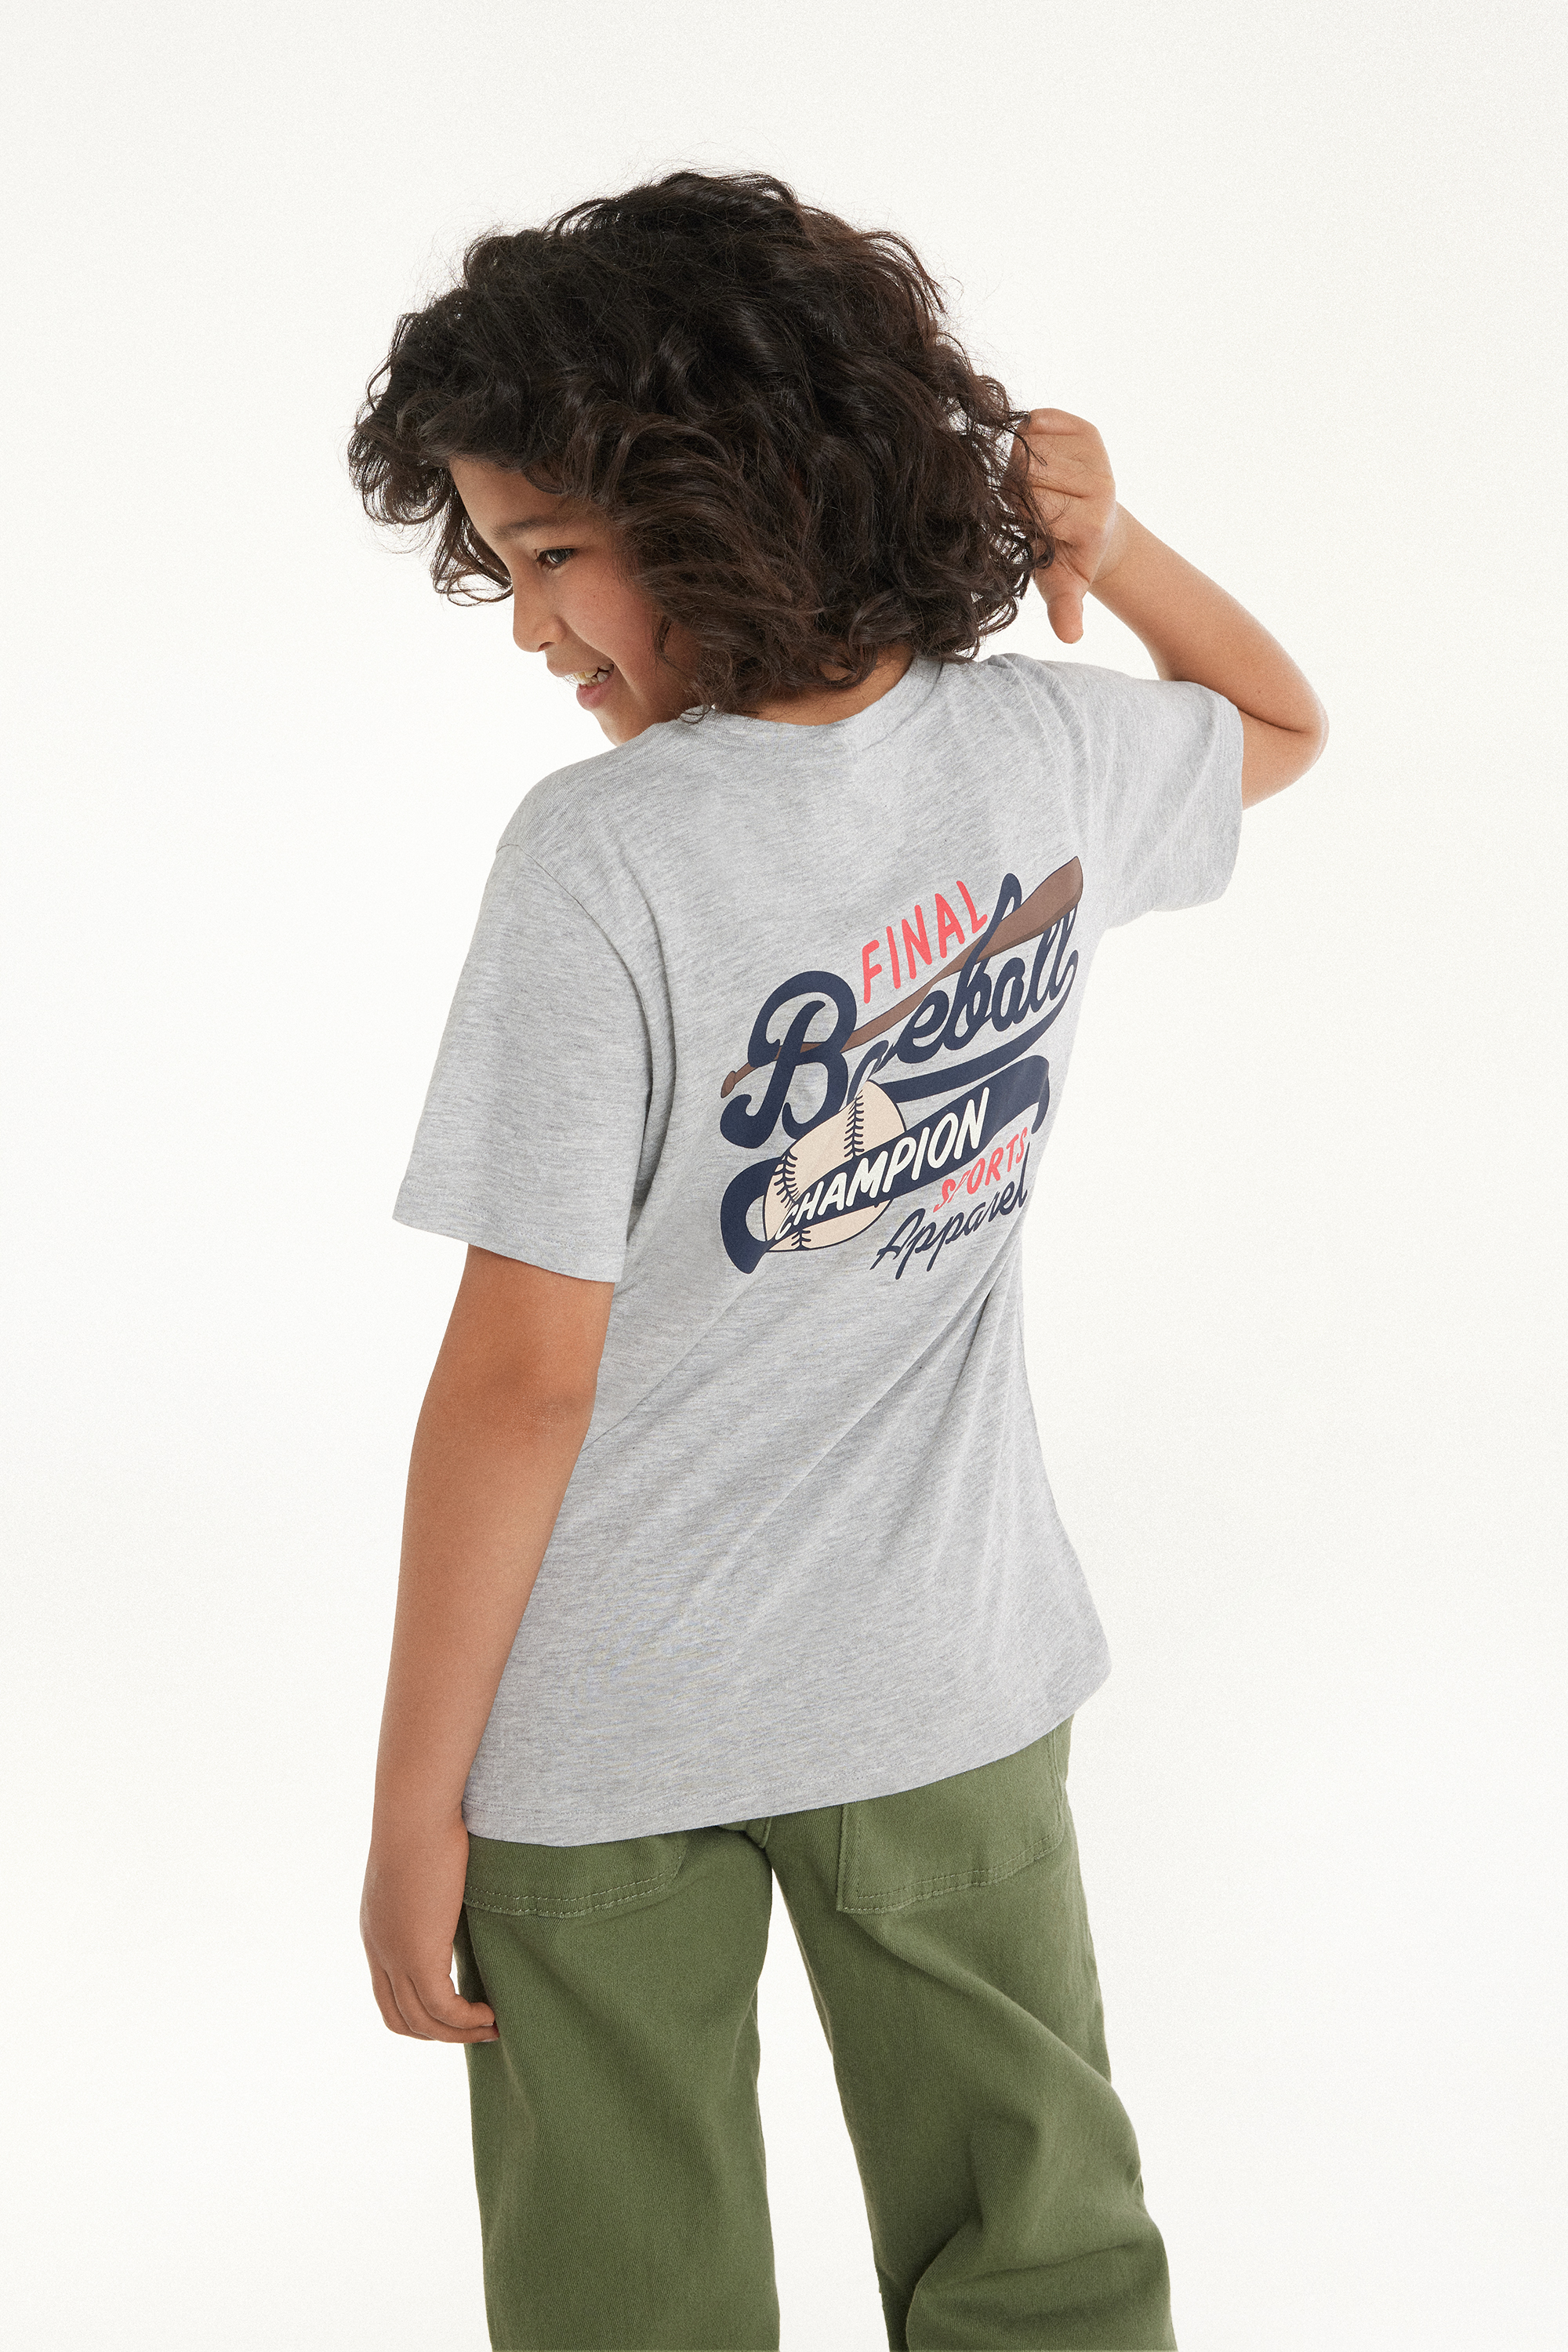 T-shirt Ras-du-cou en Coton avec Imprimé